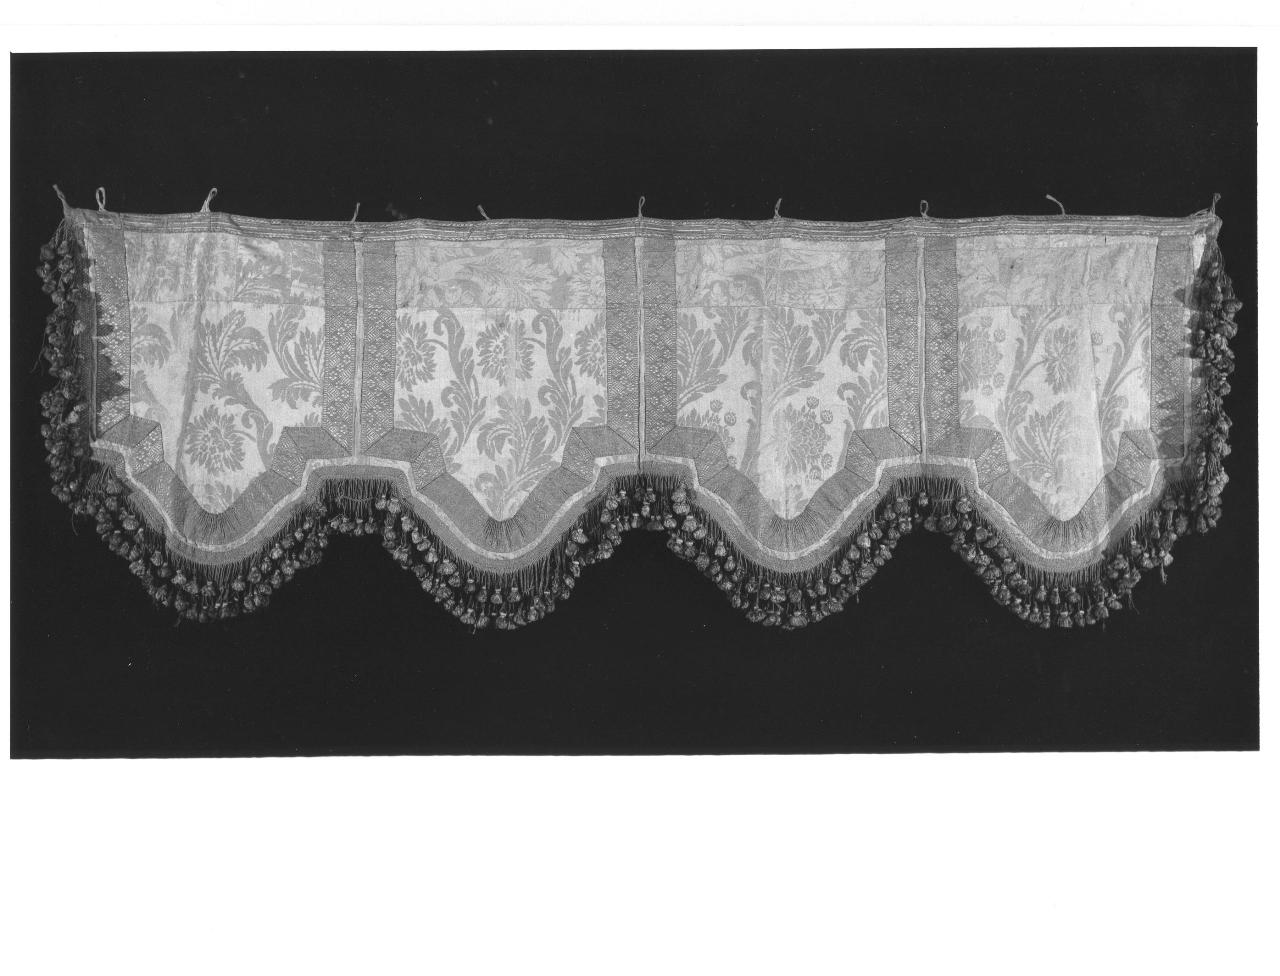 soggetto assente (drappellone di baldacchino, insieme) - manifattura Italia centrale (secc. XVII/ XVIII)